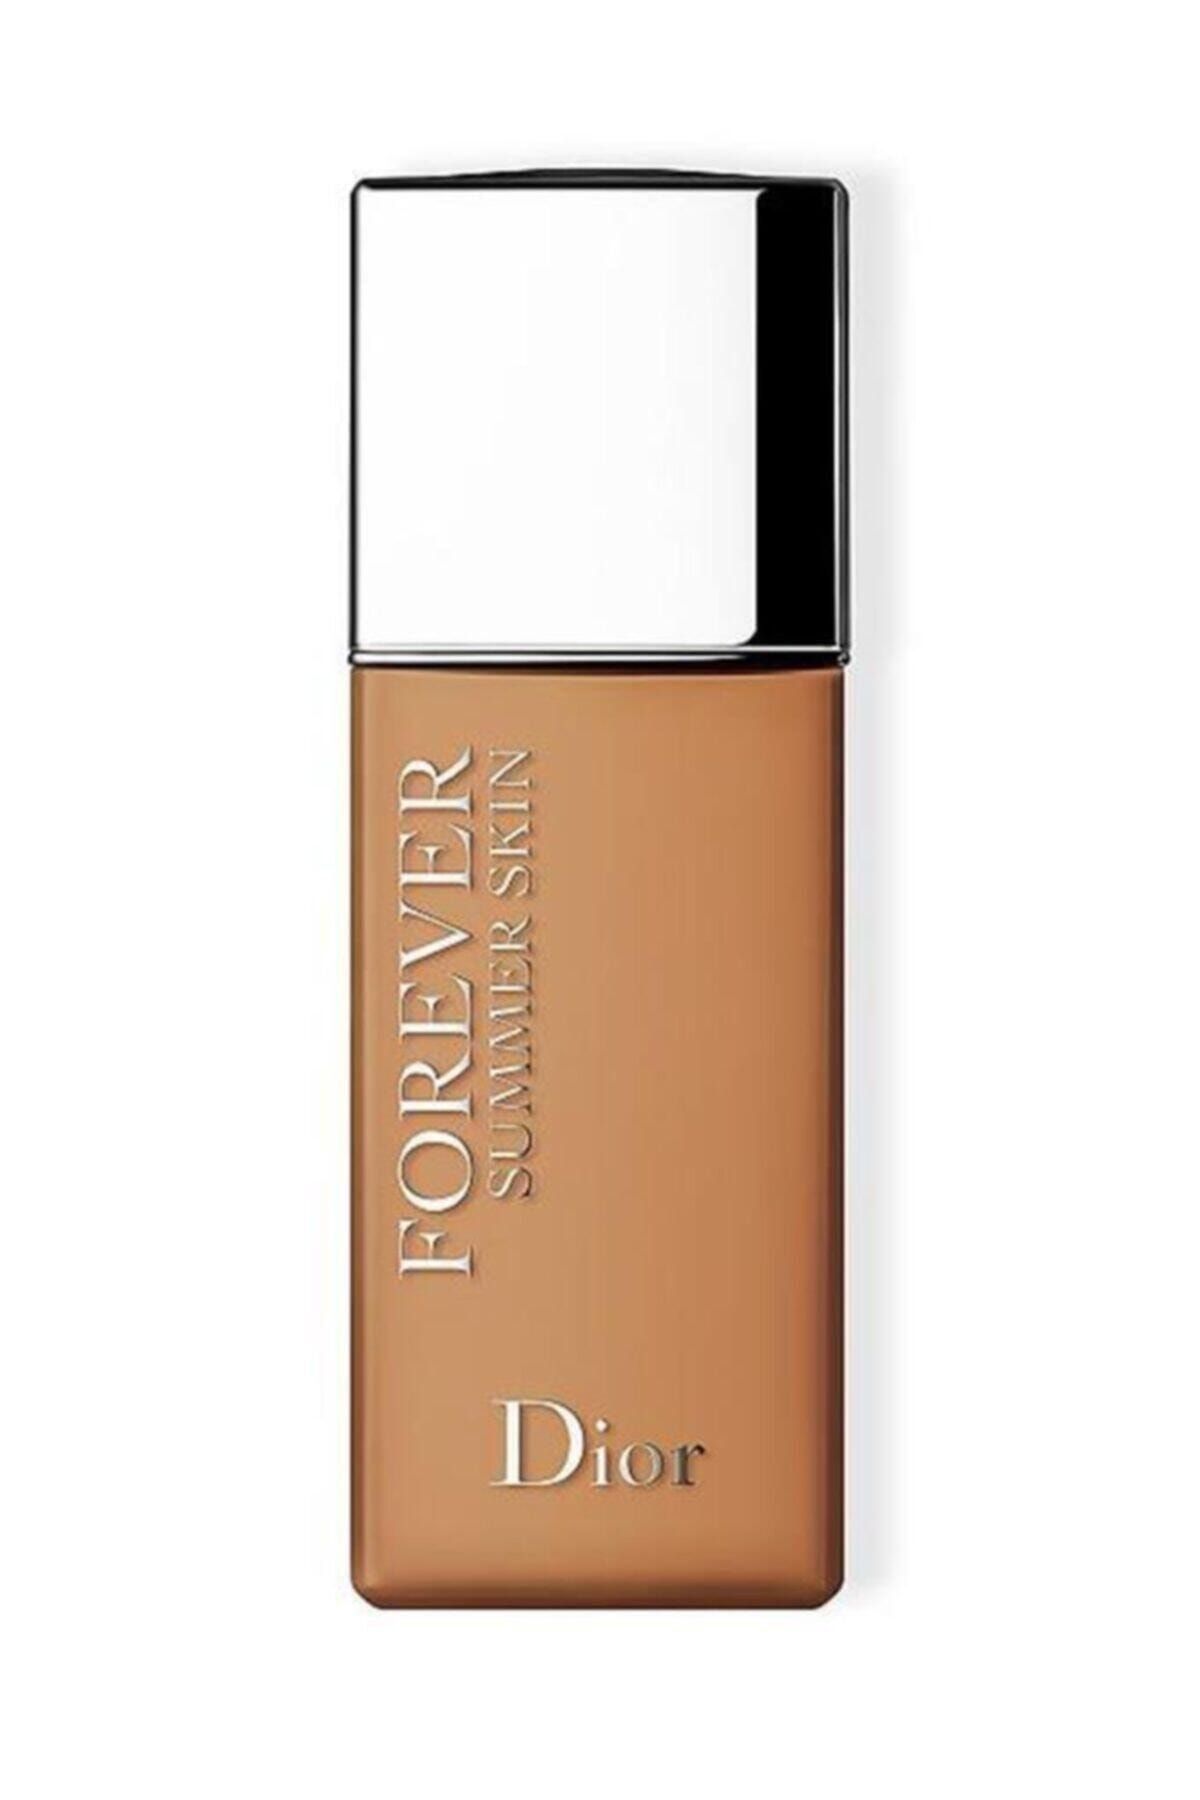 Dior Forever Summer Skin Medium Deep Fondöten 3348901514736